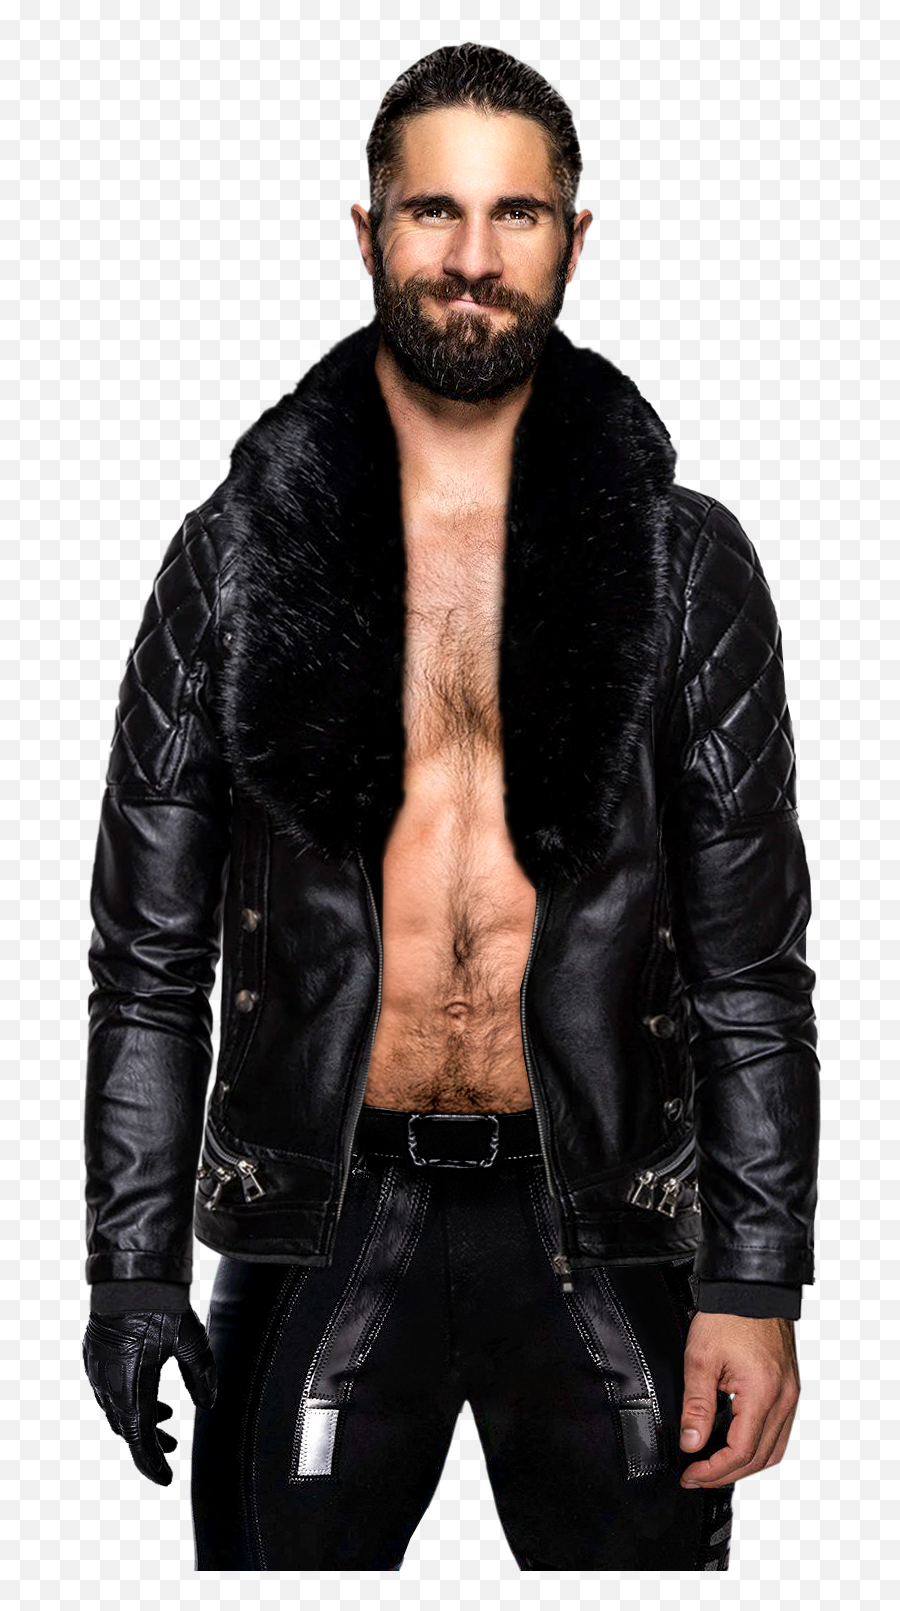 Universe Of Smash Lawl Bros Rpg Wiki - Seth Rollins Leather Jacket Png,Seth Rollins Logo Png